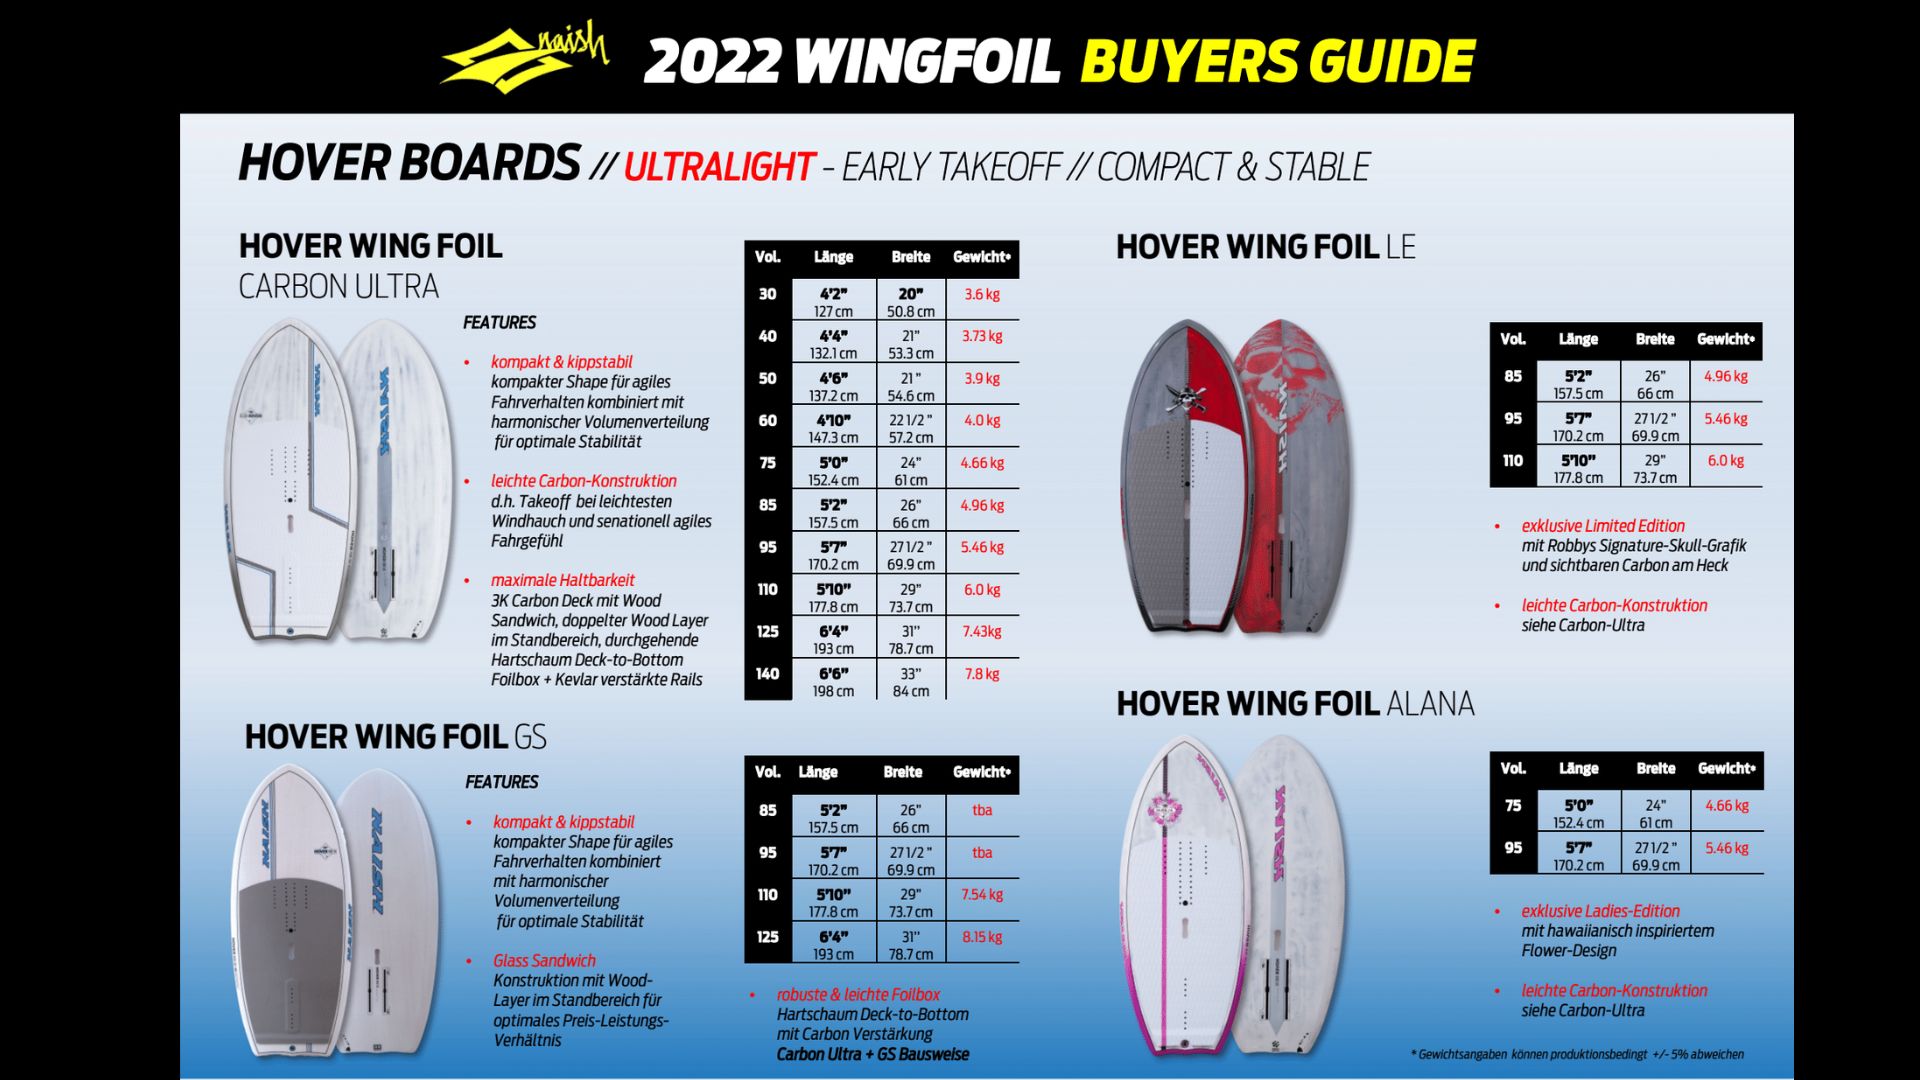 Wingfoil Buyers Guide 2022